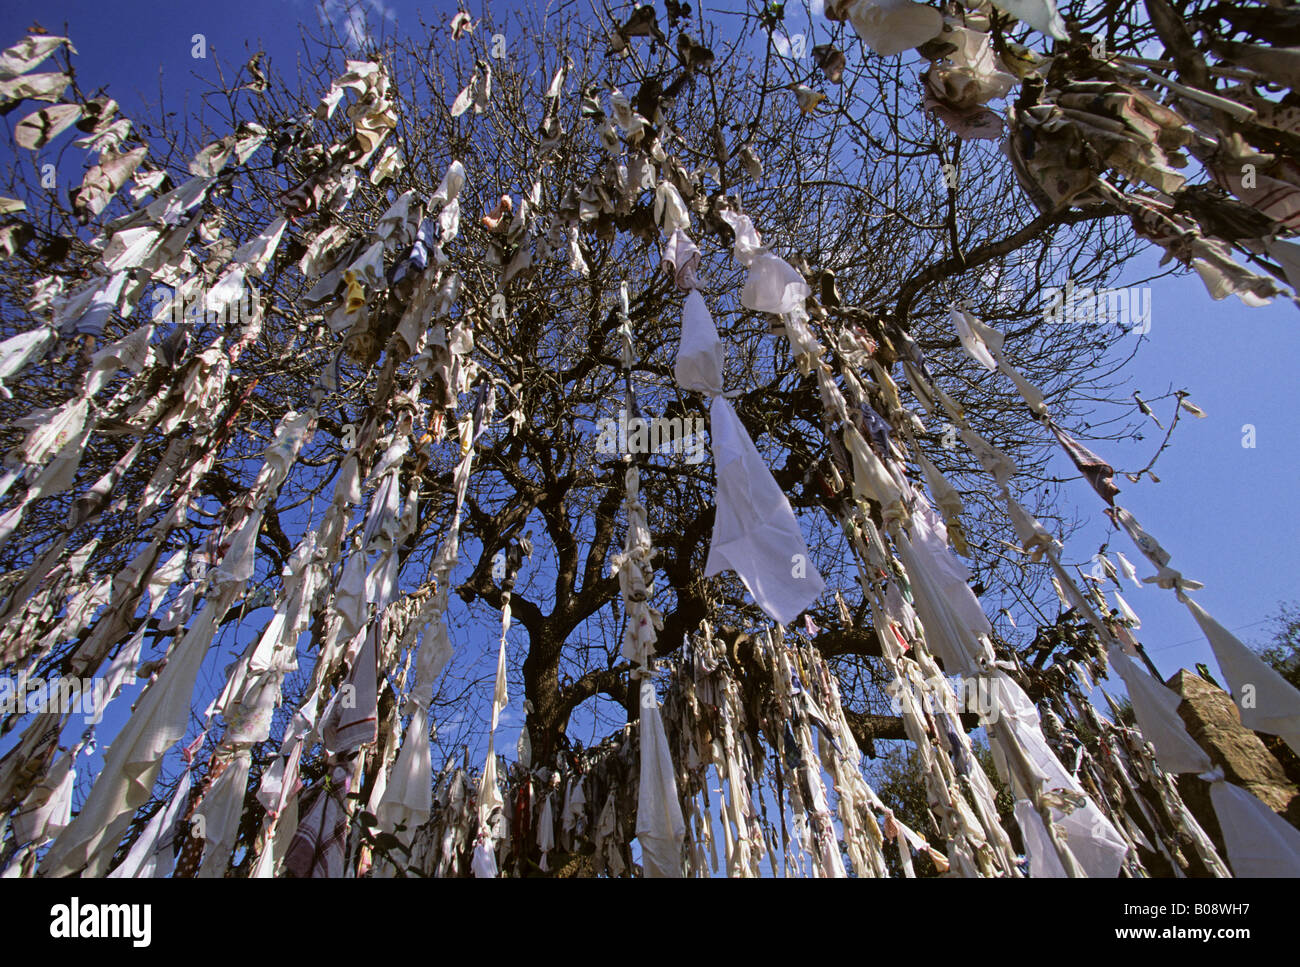 Weiße Tücher oder Taschentücher in Bändern gebunden und hängen von den  Bäumen in langen Strängen, Paphos, Zypern Stockfotografie - Alamy